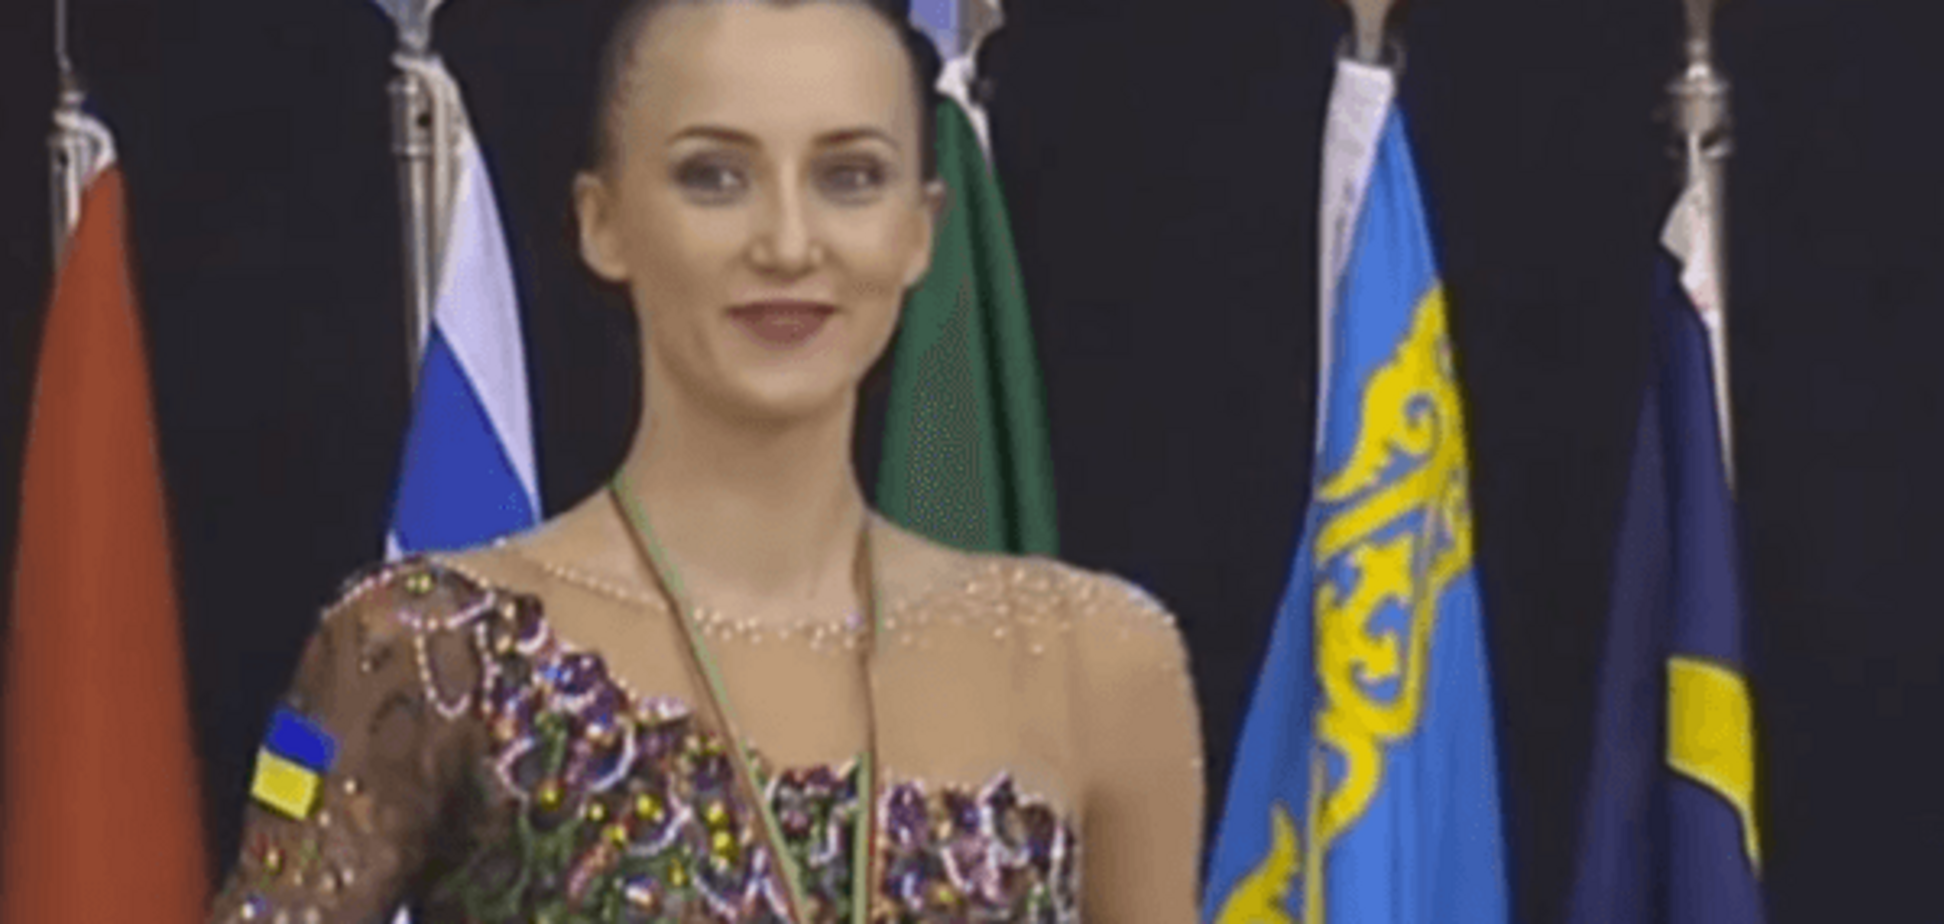 Тріумф дня: кримчанка змусила звучати гімн України на Кубку світу з гімнастики